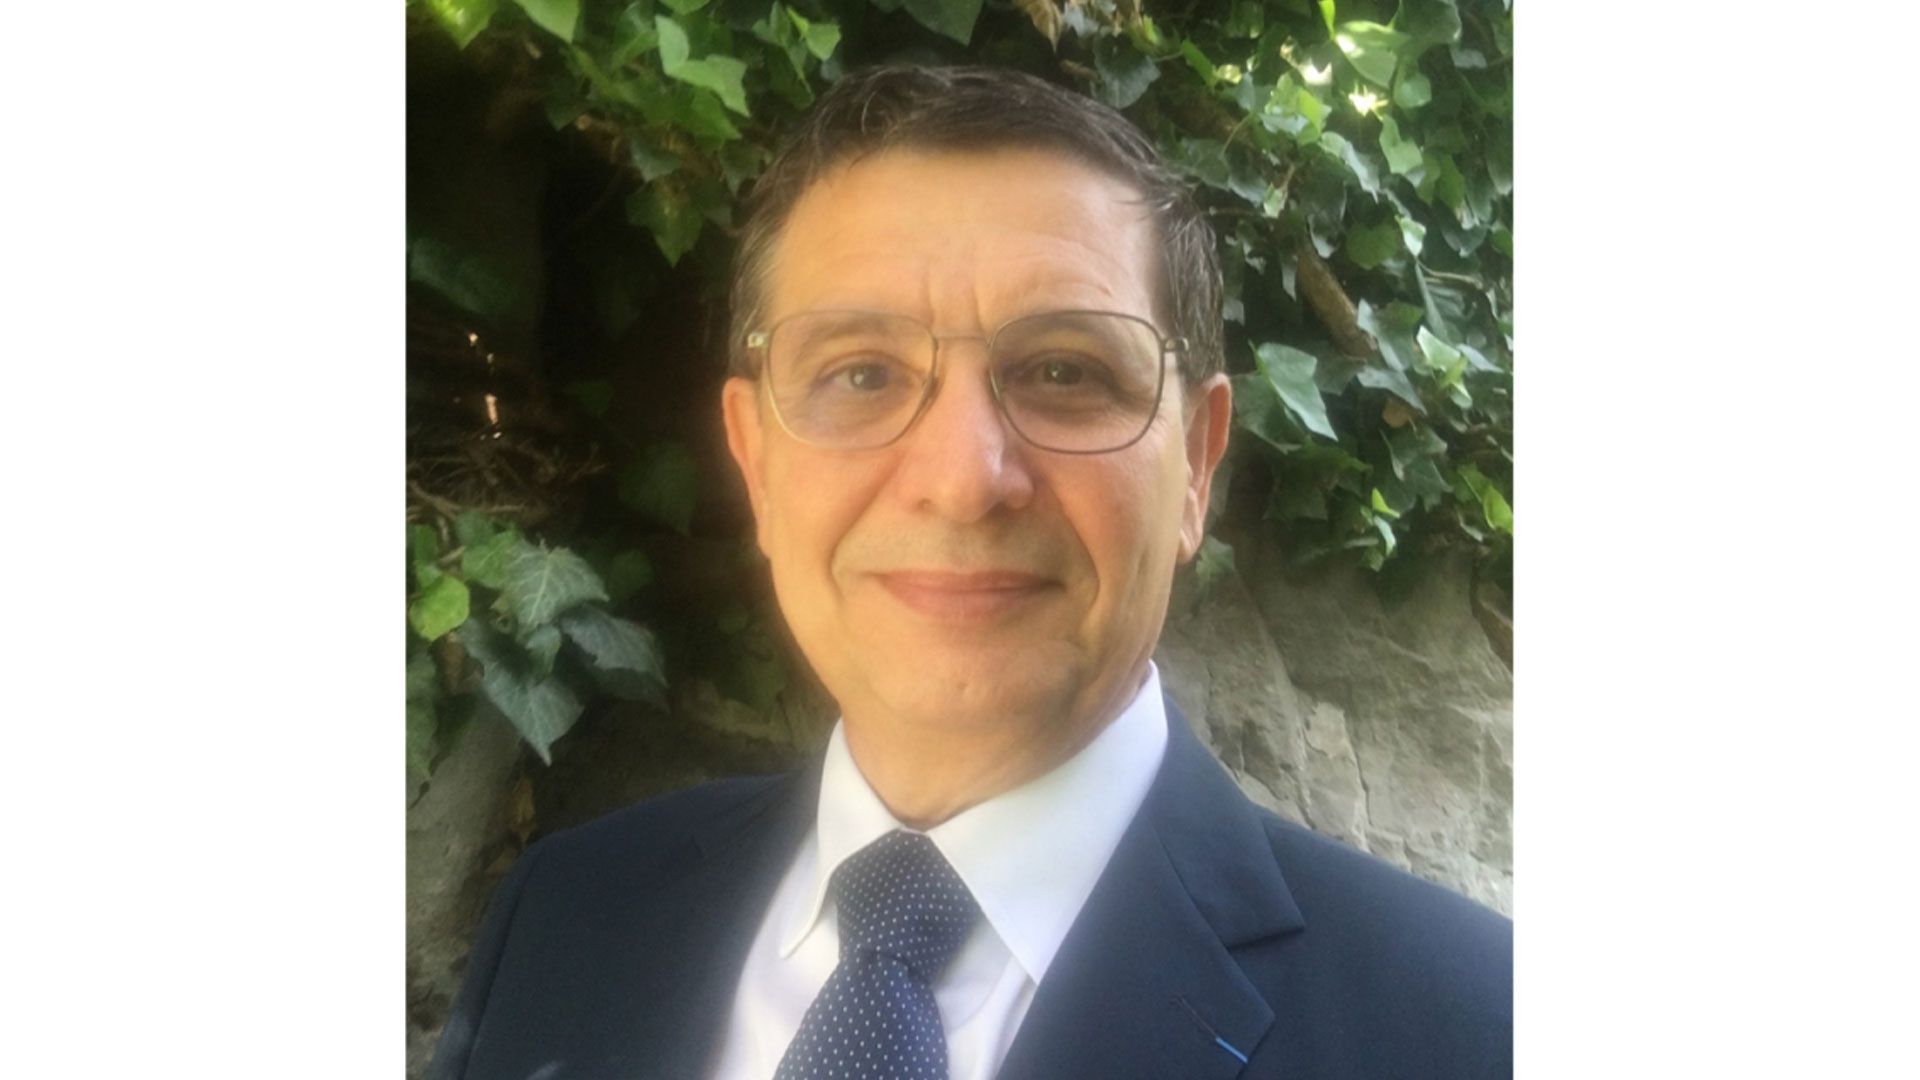 Stefano Pace est le nouveau directeur général et artistique de l’Opéra Royal de Wallonie-Liège